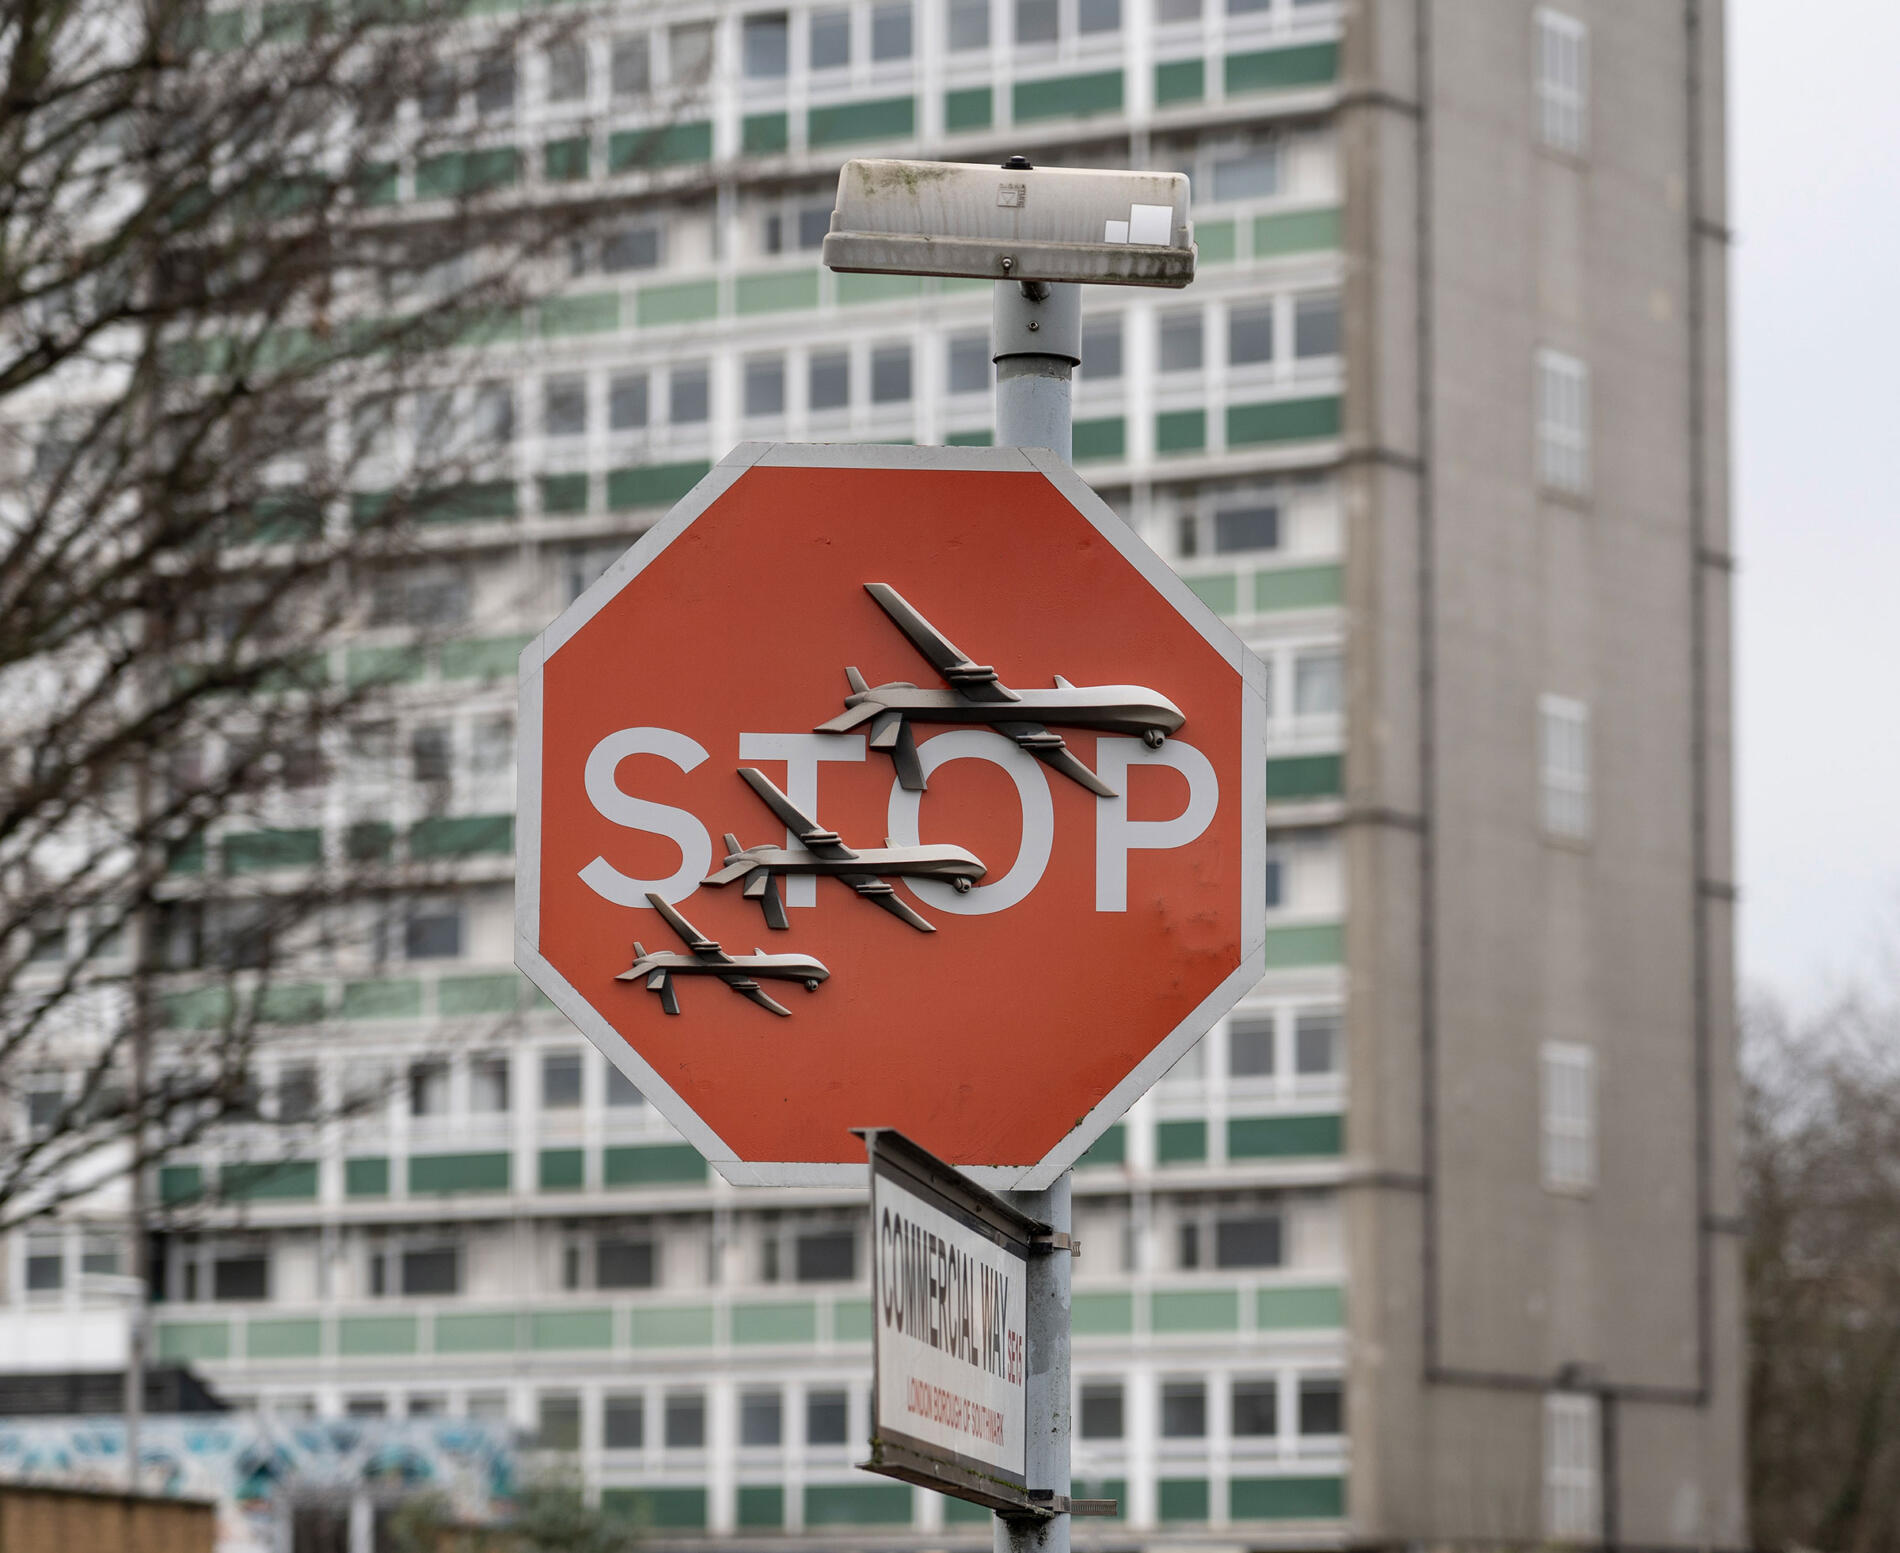 Señal de stop modificada por banksy en relación al genocidio perpetrado por israel contra palestina